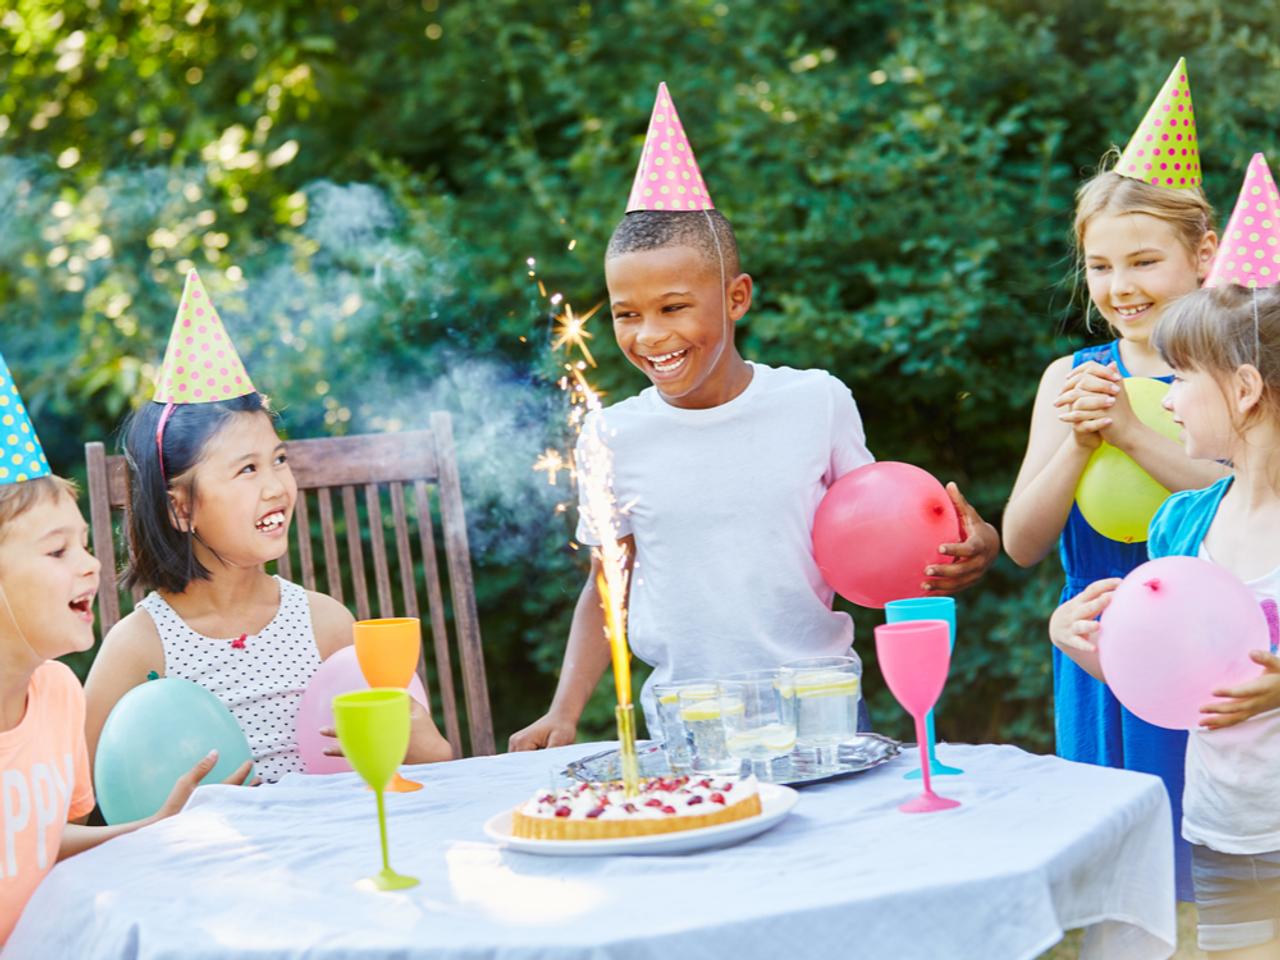 ｢誕生日パーティーがあるから年齢が上がる｣そう信じている子どもたちもいる